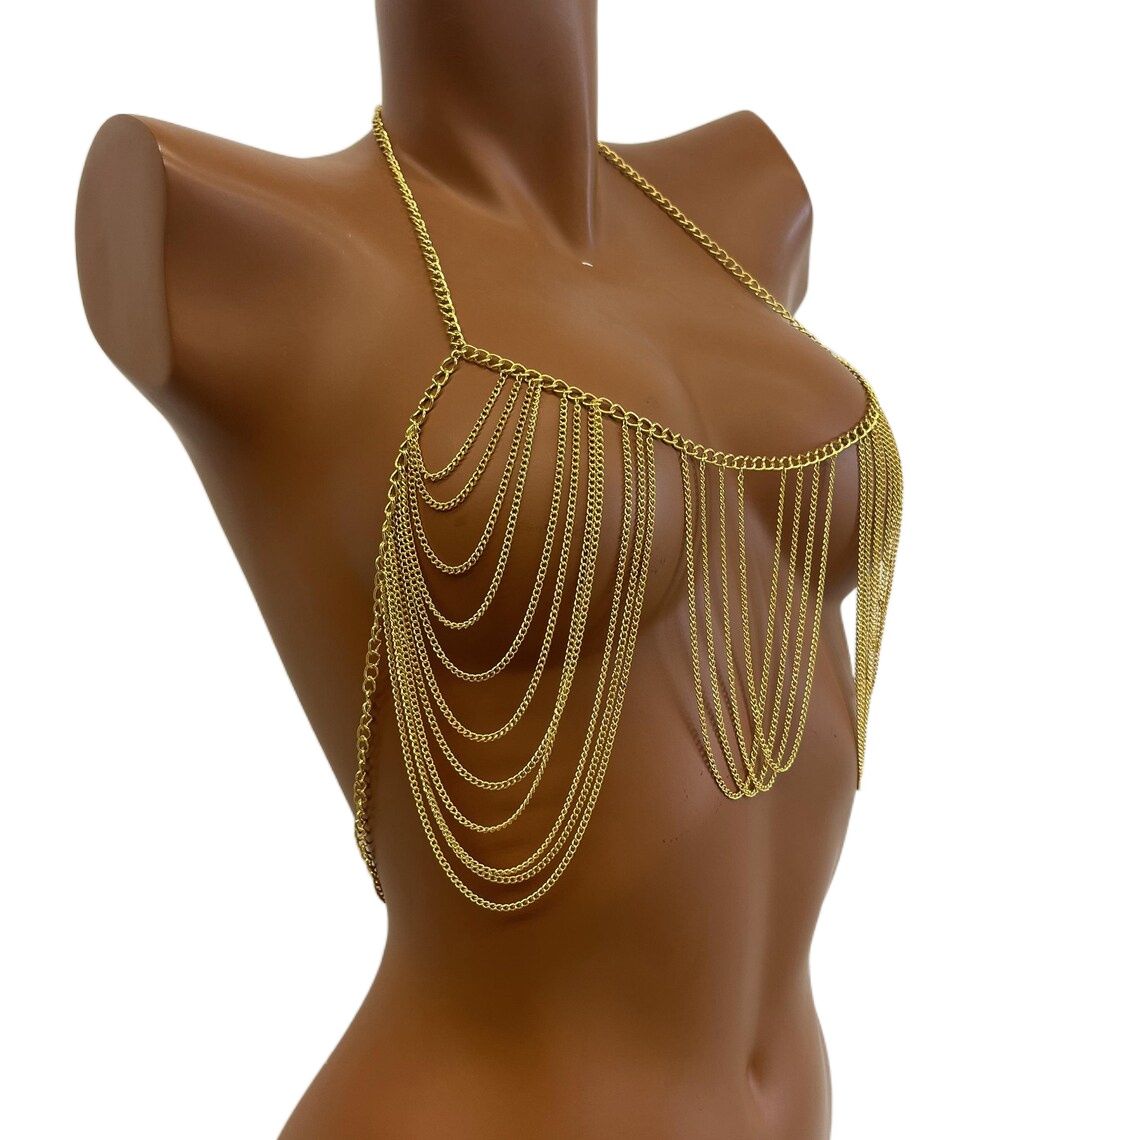 Lavish indulgent - Stylish Body Chain Bra Chain Summer Beach Women and  Girls' Body Jewelry - Easy To maintain - Elite Expression